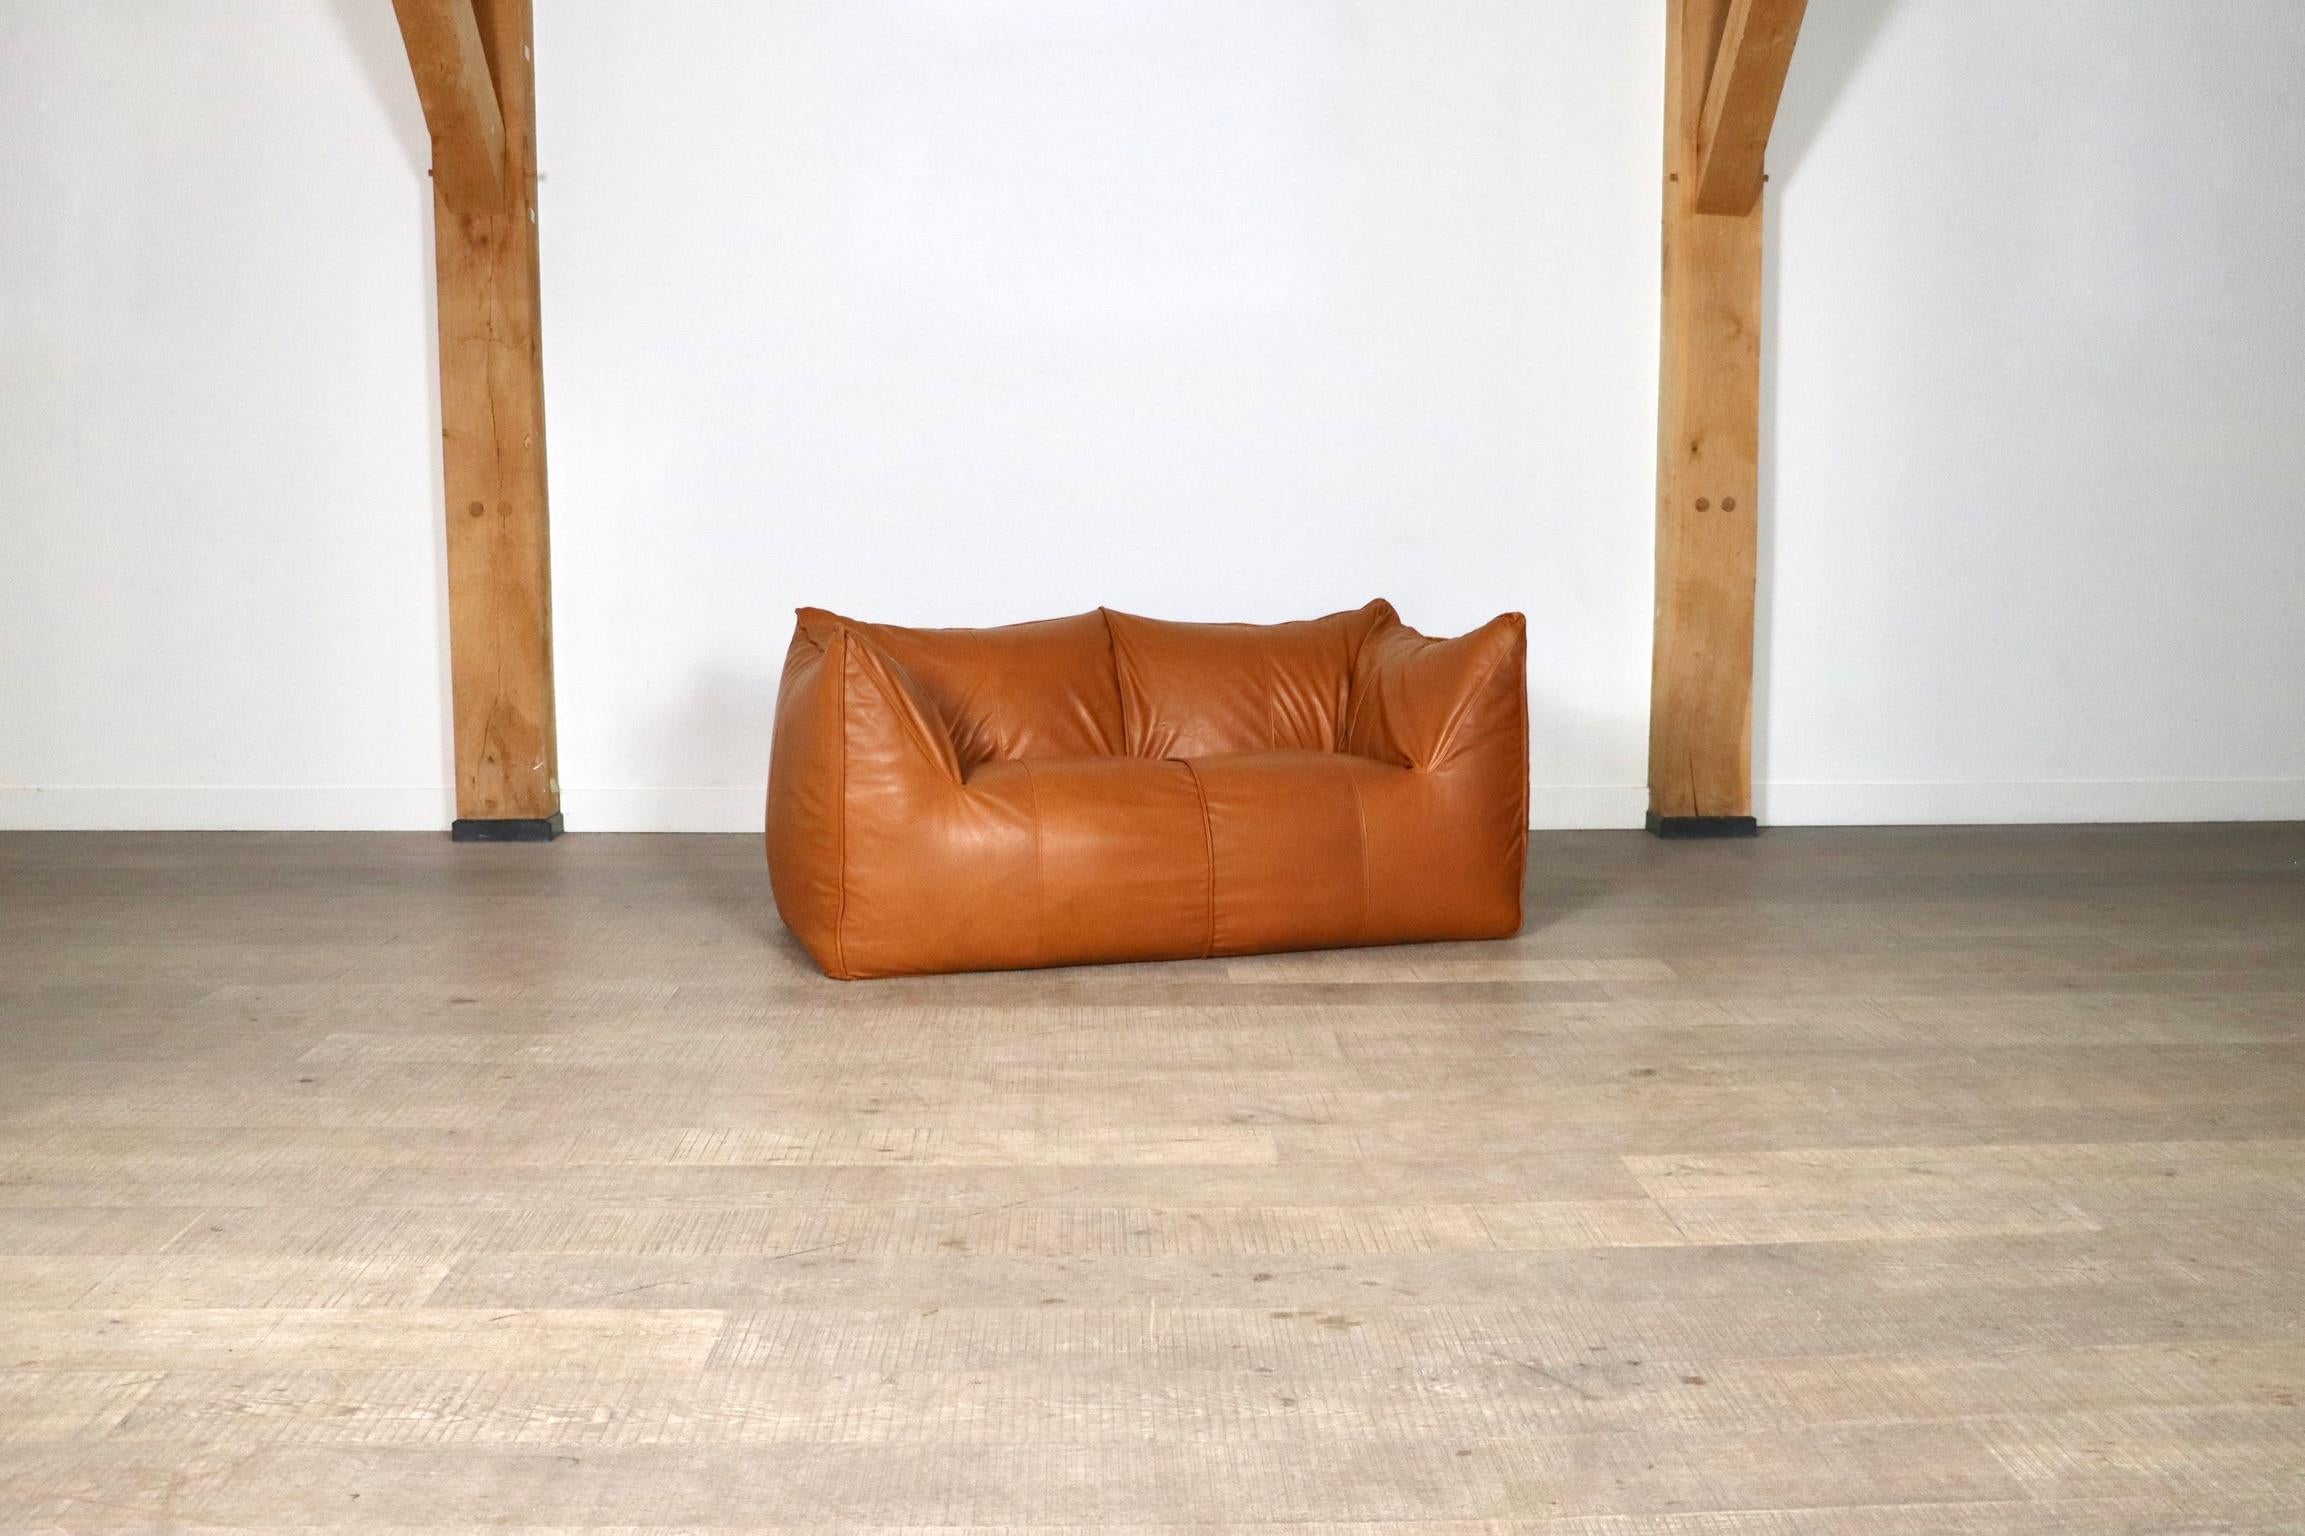 Mid-20th Century Le Bambole Sofa In Cognac Leather By Mario Bellini For B&B Italia 1970s